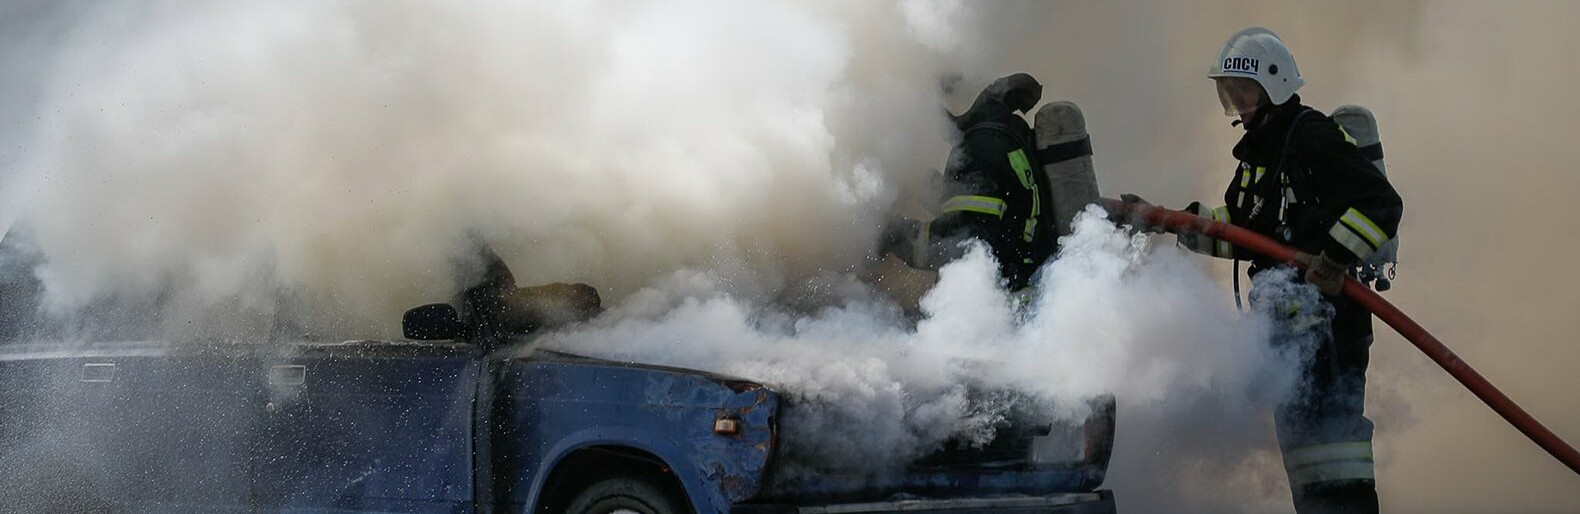 Белгородские гаишники потушили загоревшийся на дороге УАЗ 